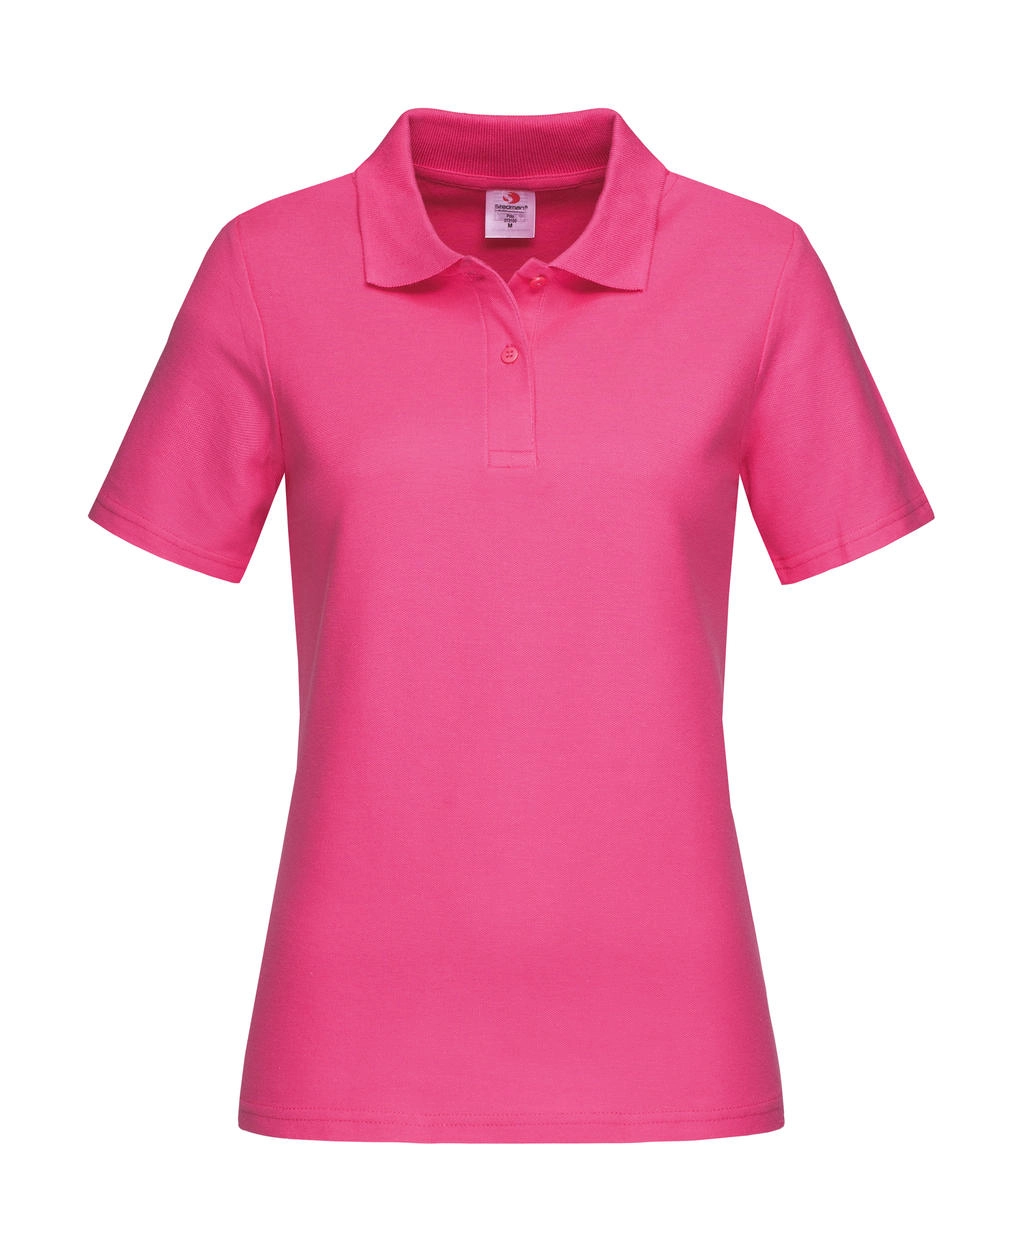 Polo Women zum Besticken und Bedrucken in der Farbe Sweet Pink mit Ihren Logo, Schriftzug oder Motiv.